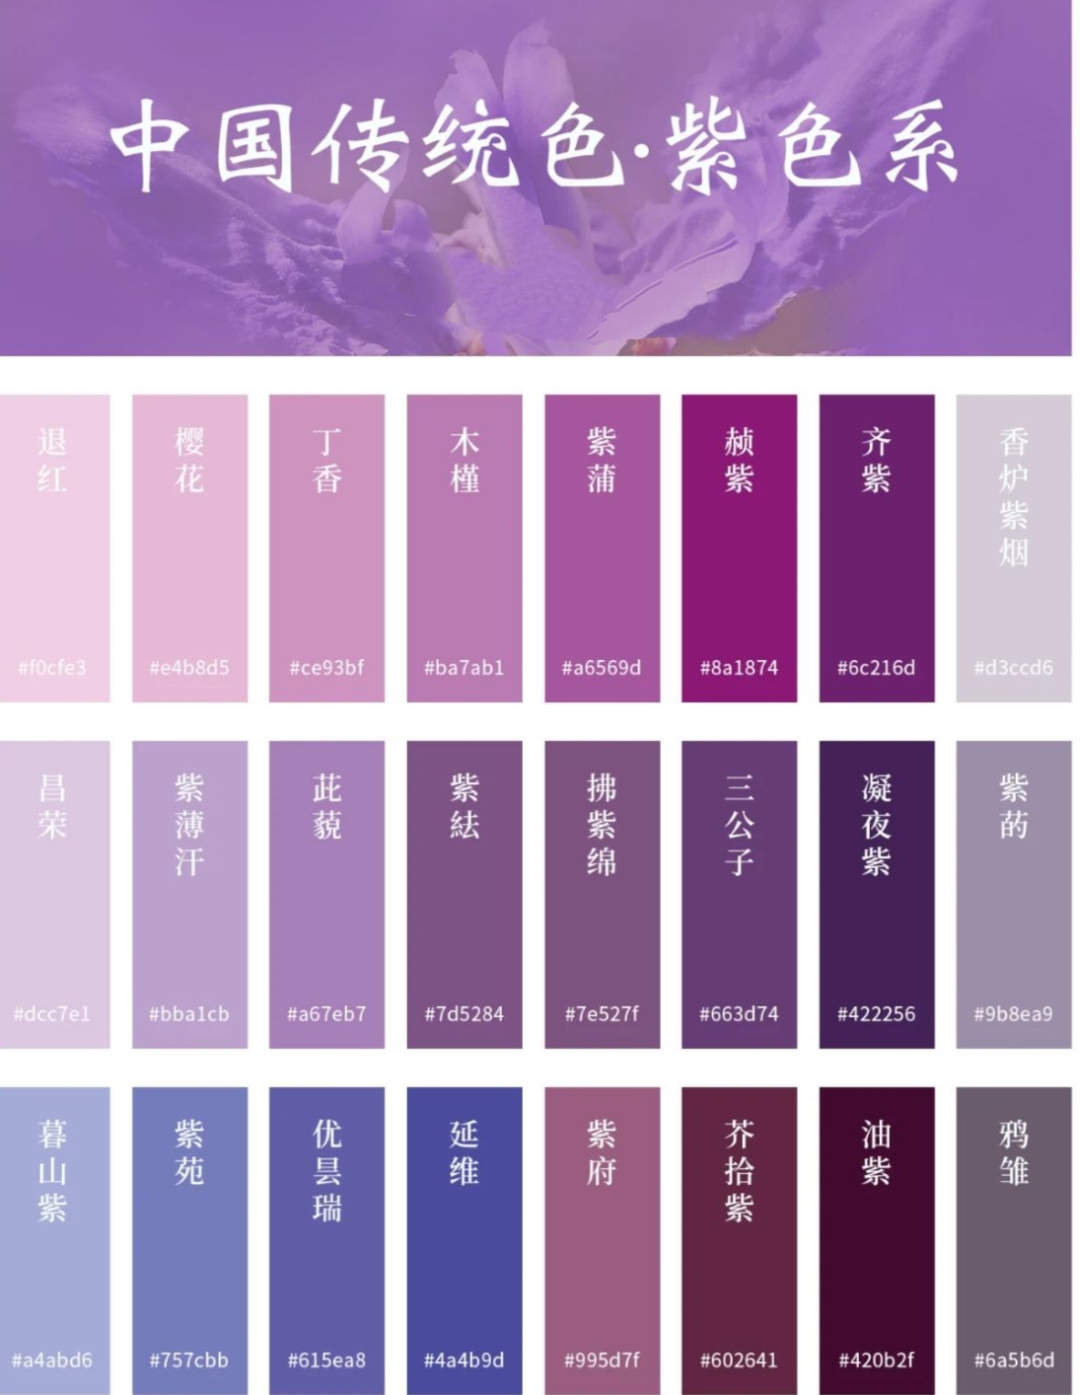 中国传统色系——紫色系 潦水尽而寒潭清,烟光凝而暮山紫